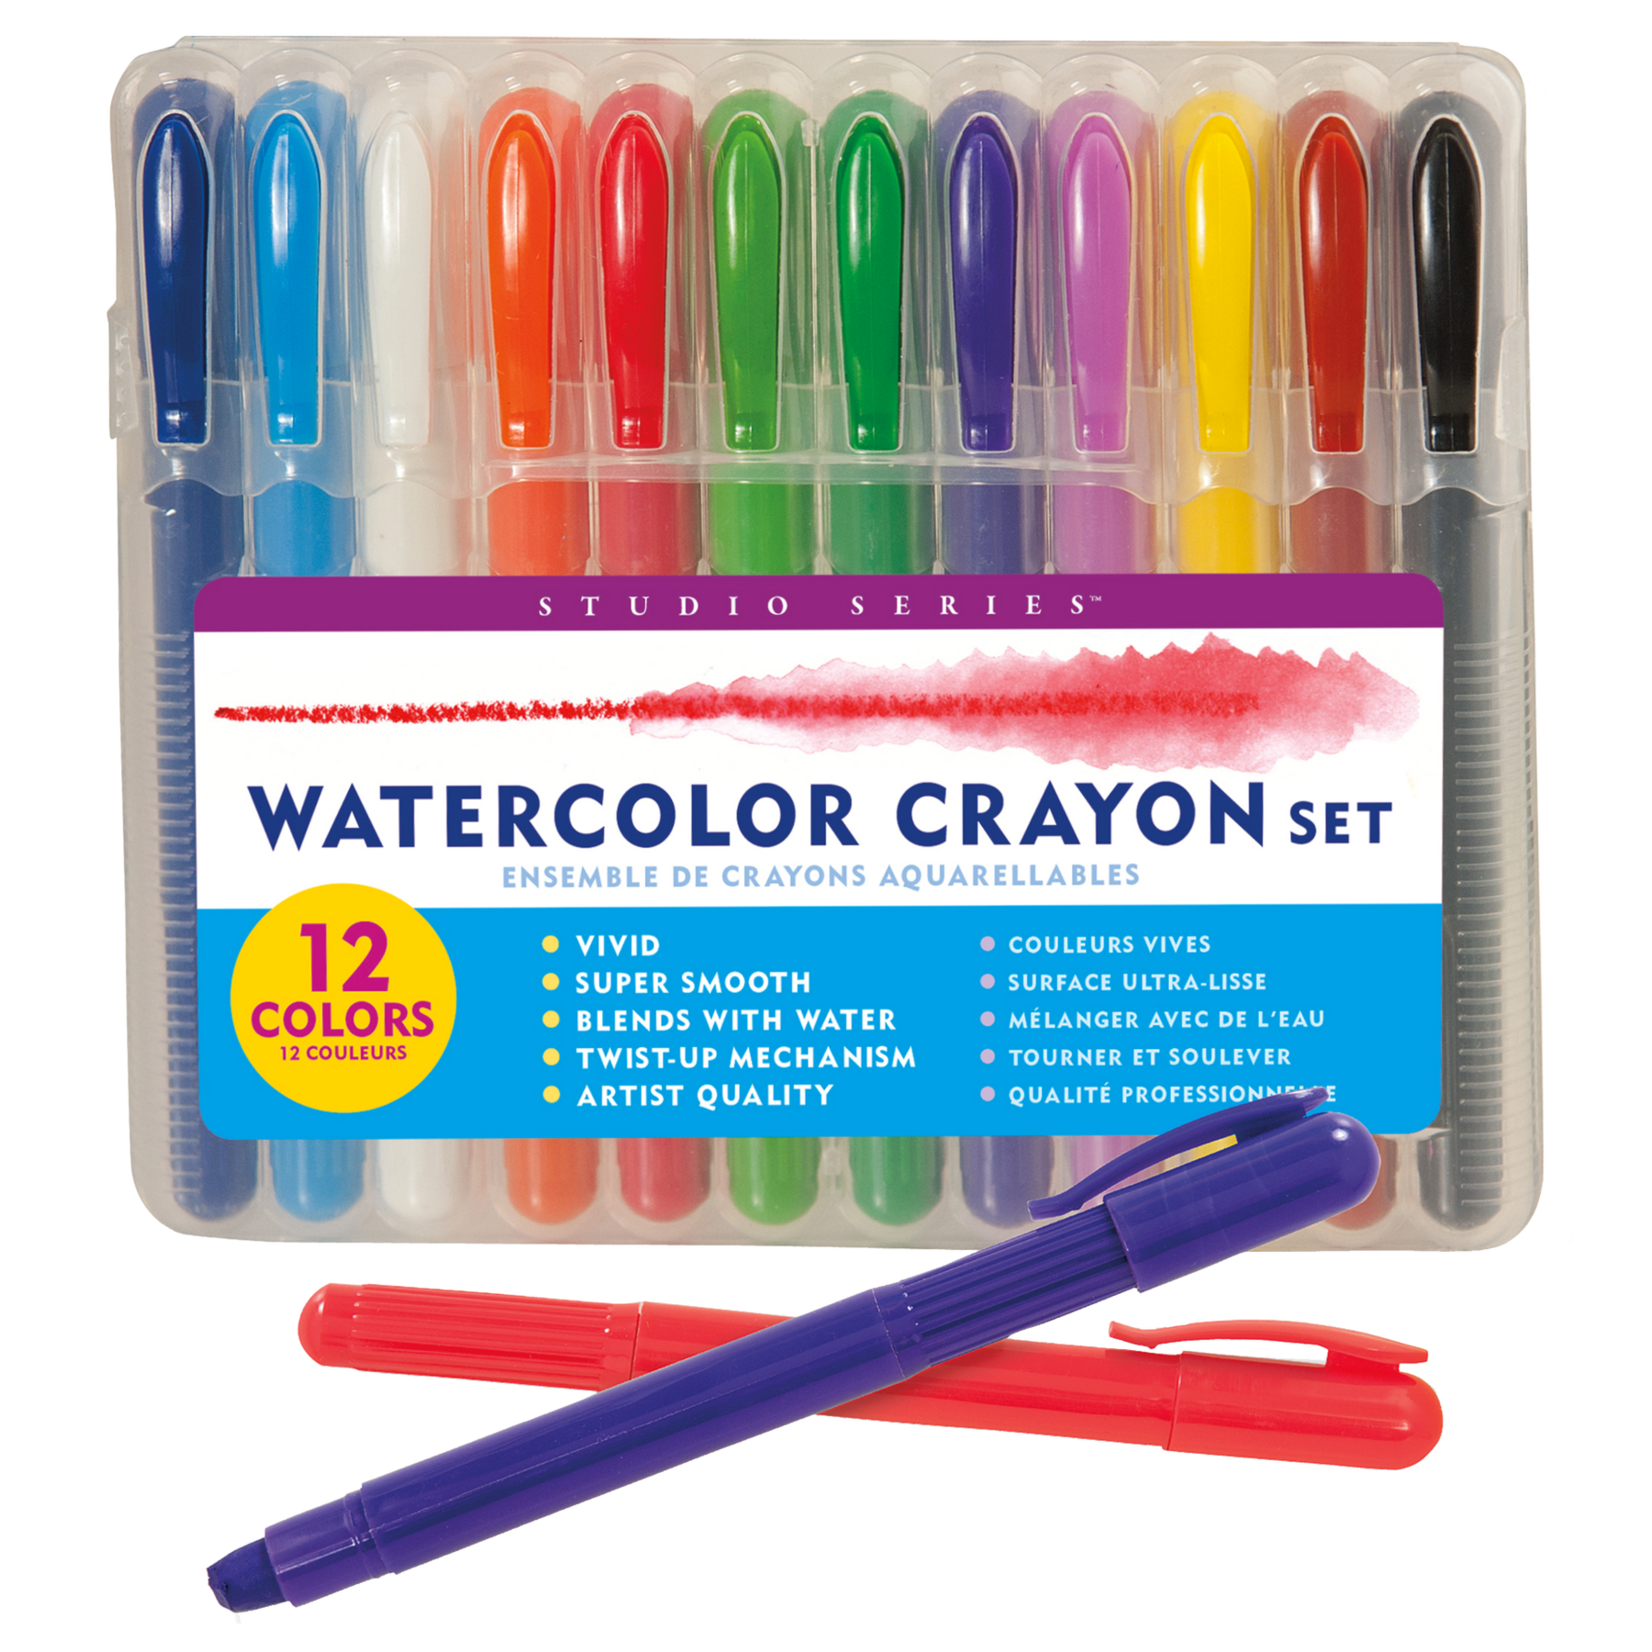 Peter Pauper Press Studio Series Watercolor Crayons